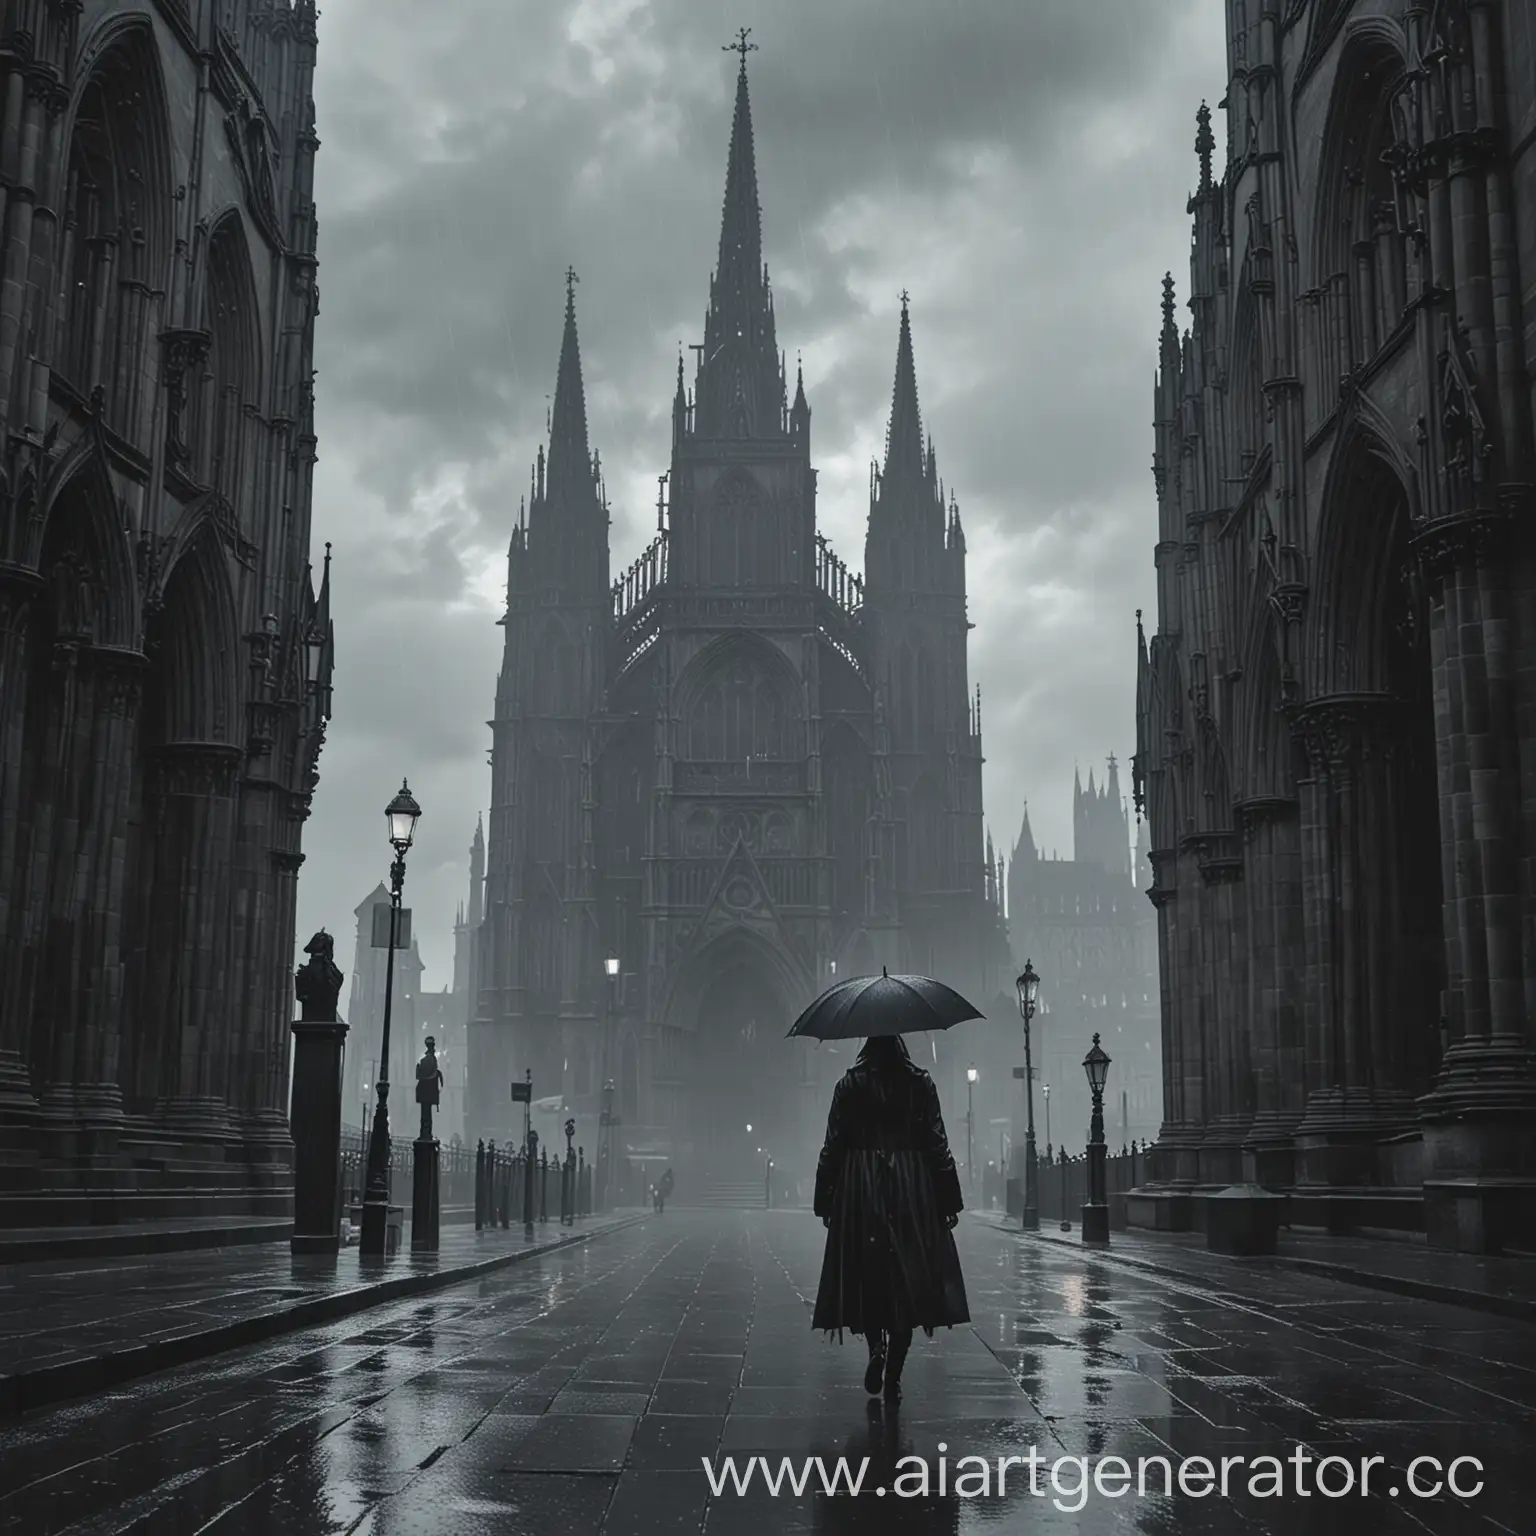 обложка на песню готический стиль собор человек в капюшоне идет дождь